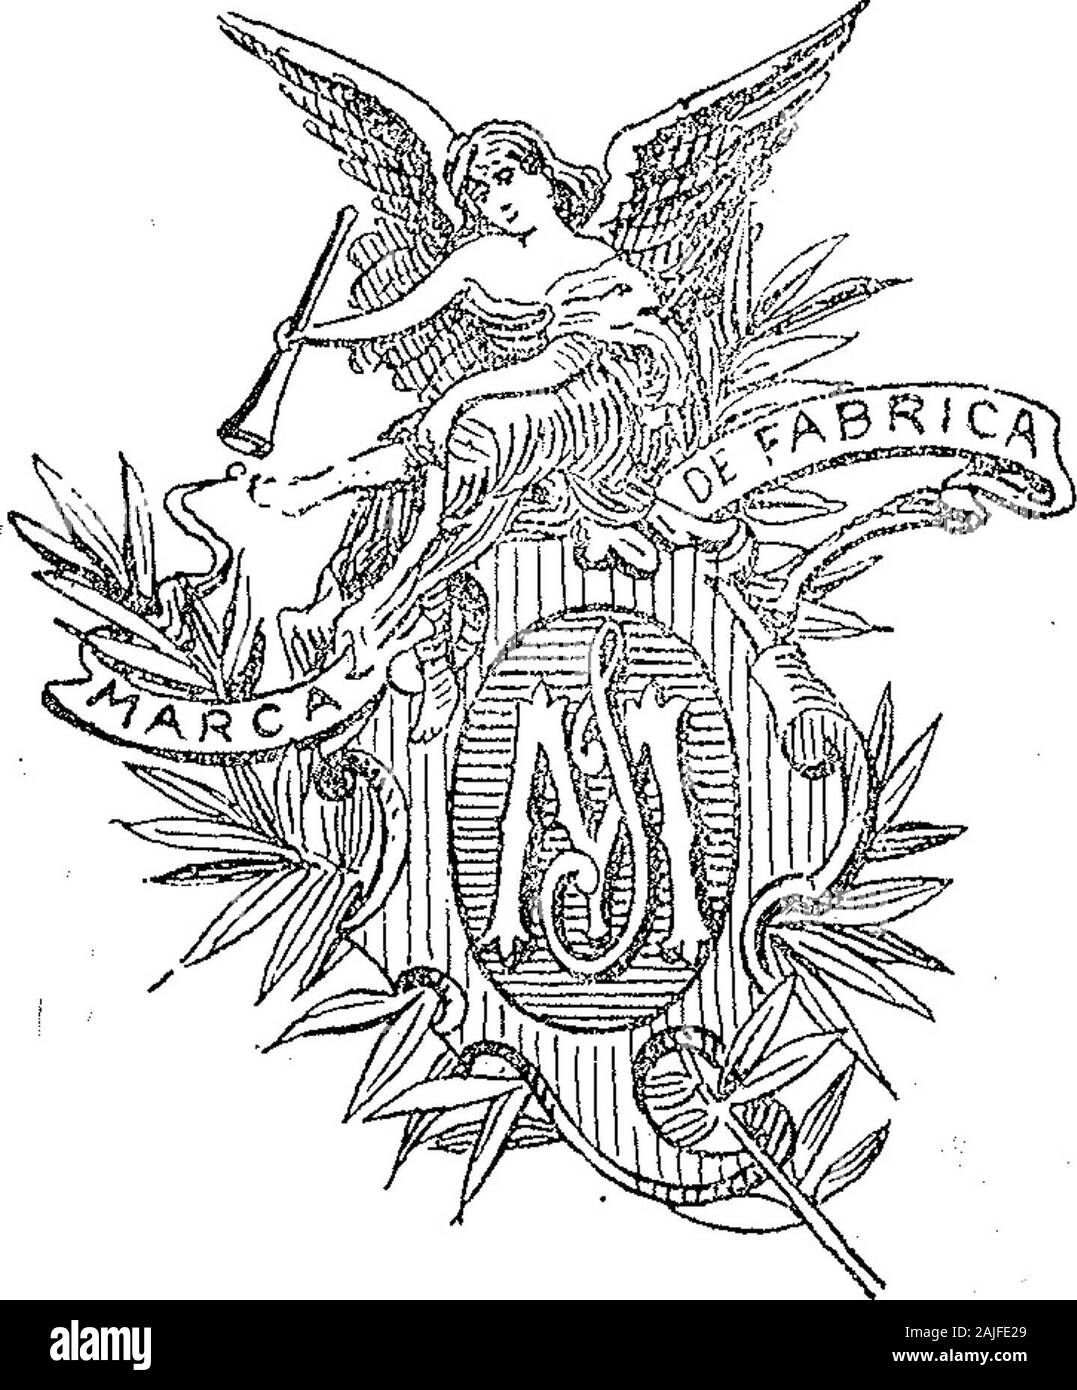 Boletín Oficial de la República Argentina 1903 1ra sección . nALO-riATEMSE-B-AS PROPlíTARiOS F.SCl.USiVOS DF.J.A MARCA 3- ó% - ////./,- &gt;f / -¡///as/fiJ á f;. ?¿&lt;Z1 BUENOS AIRES Febrero 17 de 1903.—Pini Hermanos y Cía.—Distinguir cognac. Alsina 1243. v-26-Febrero. / Acíis W°; 18.502. Febrero 18 de 1903.—José Massaroli.—Distinguir aguas gaseosas y minerales, ver-niouth, vinos, grappas, bebidas, licores y refrescos. Junín 1660. v-26-Febrero Uíta No. 11.477 Stock Photo